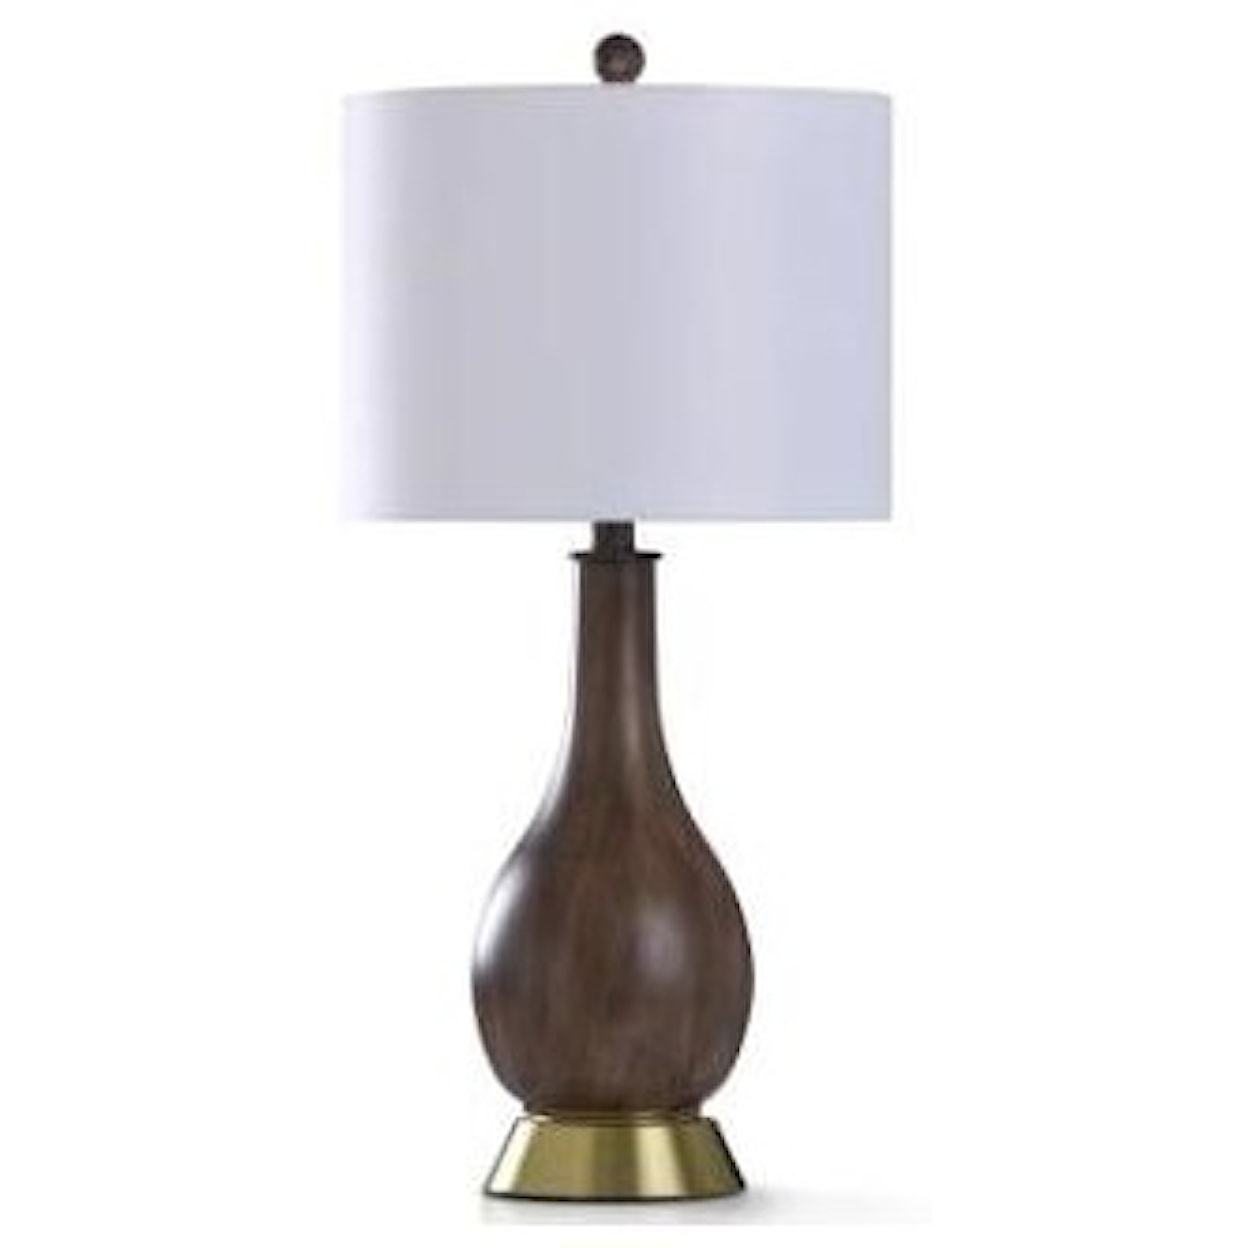 StyleCraft Lamps Roanoke Table Lamp